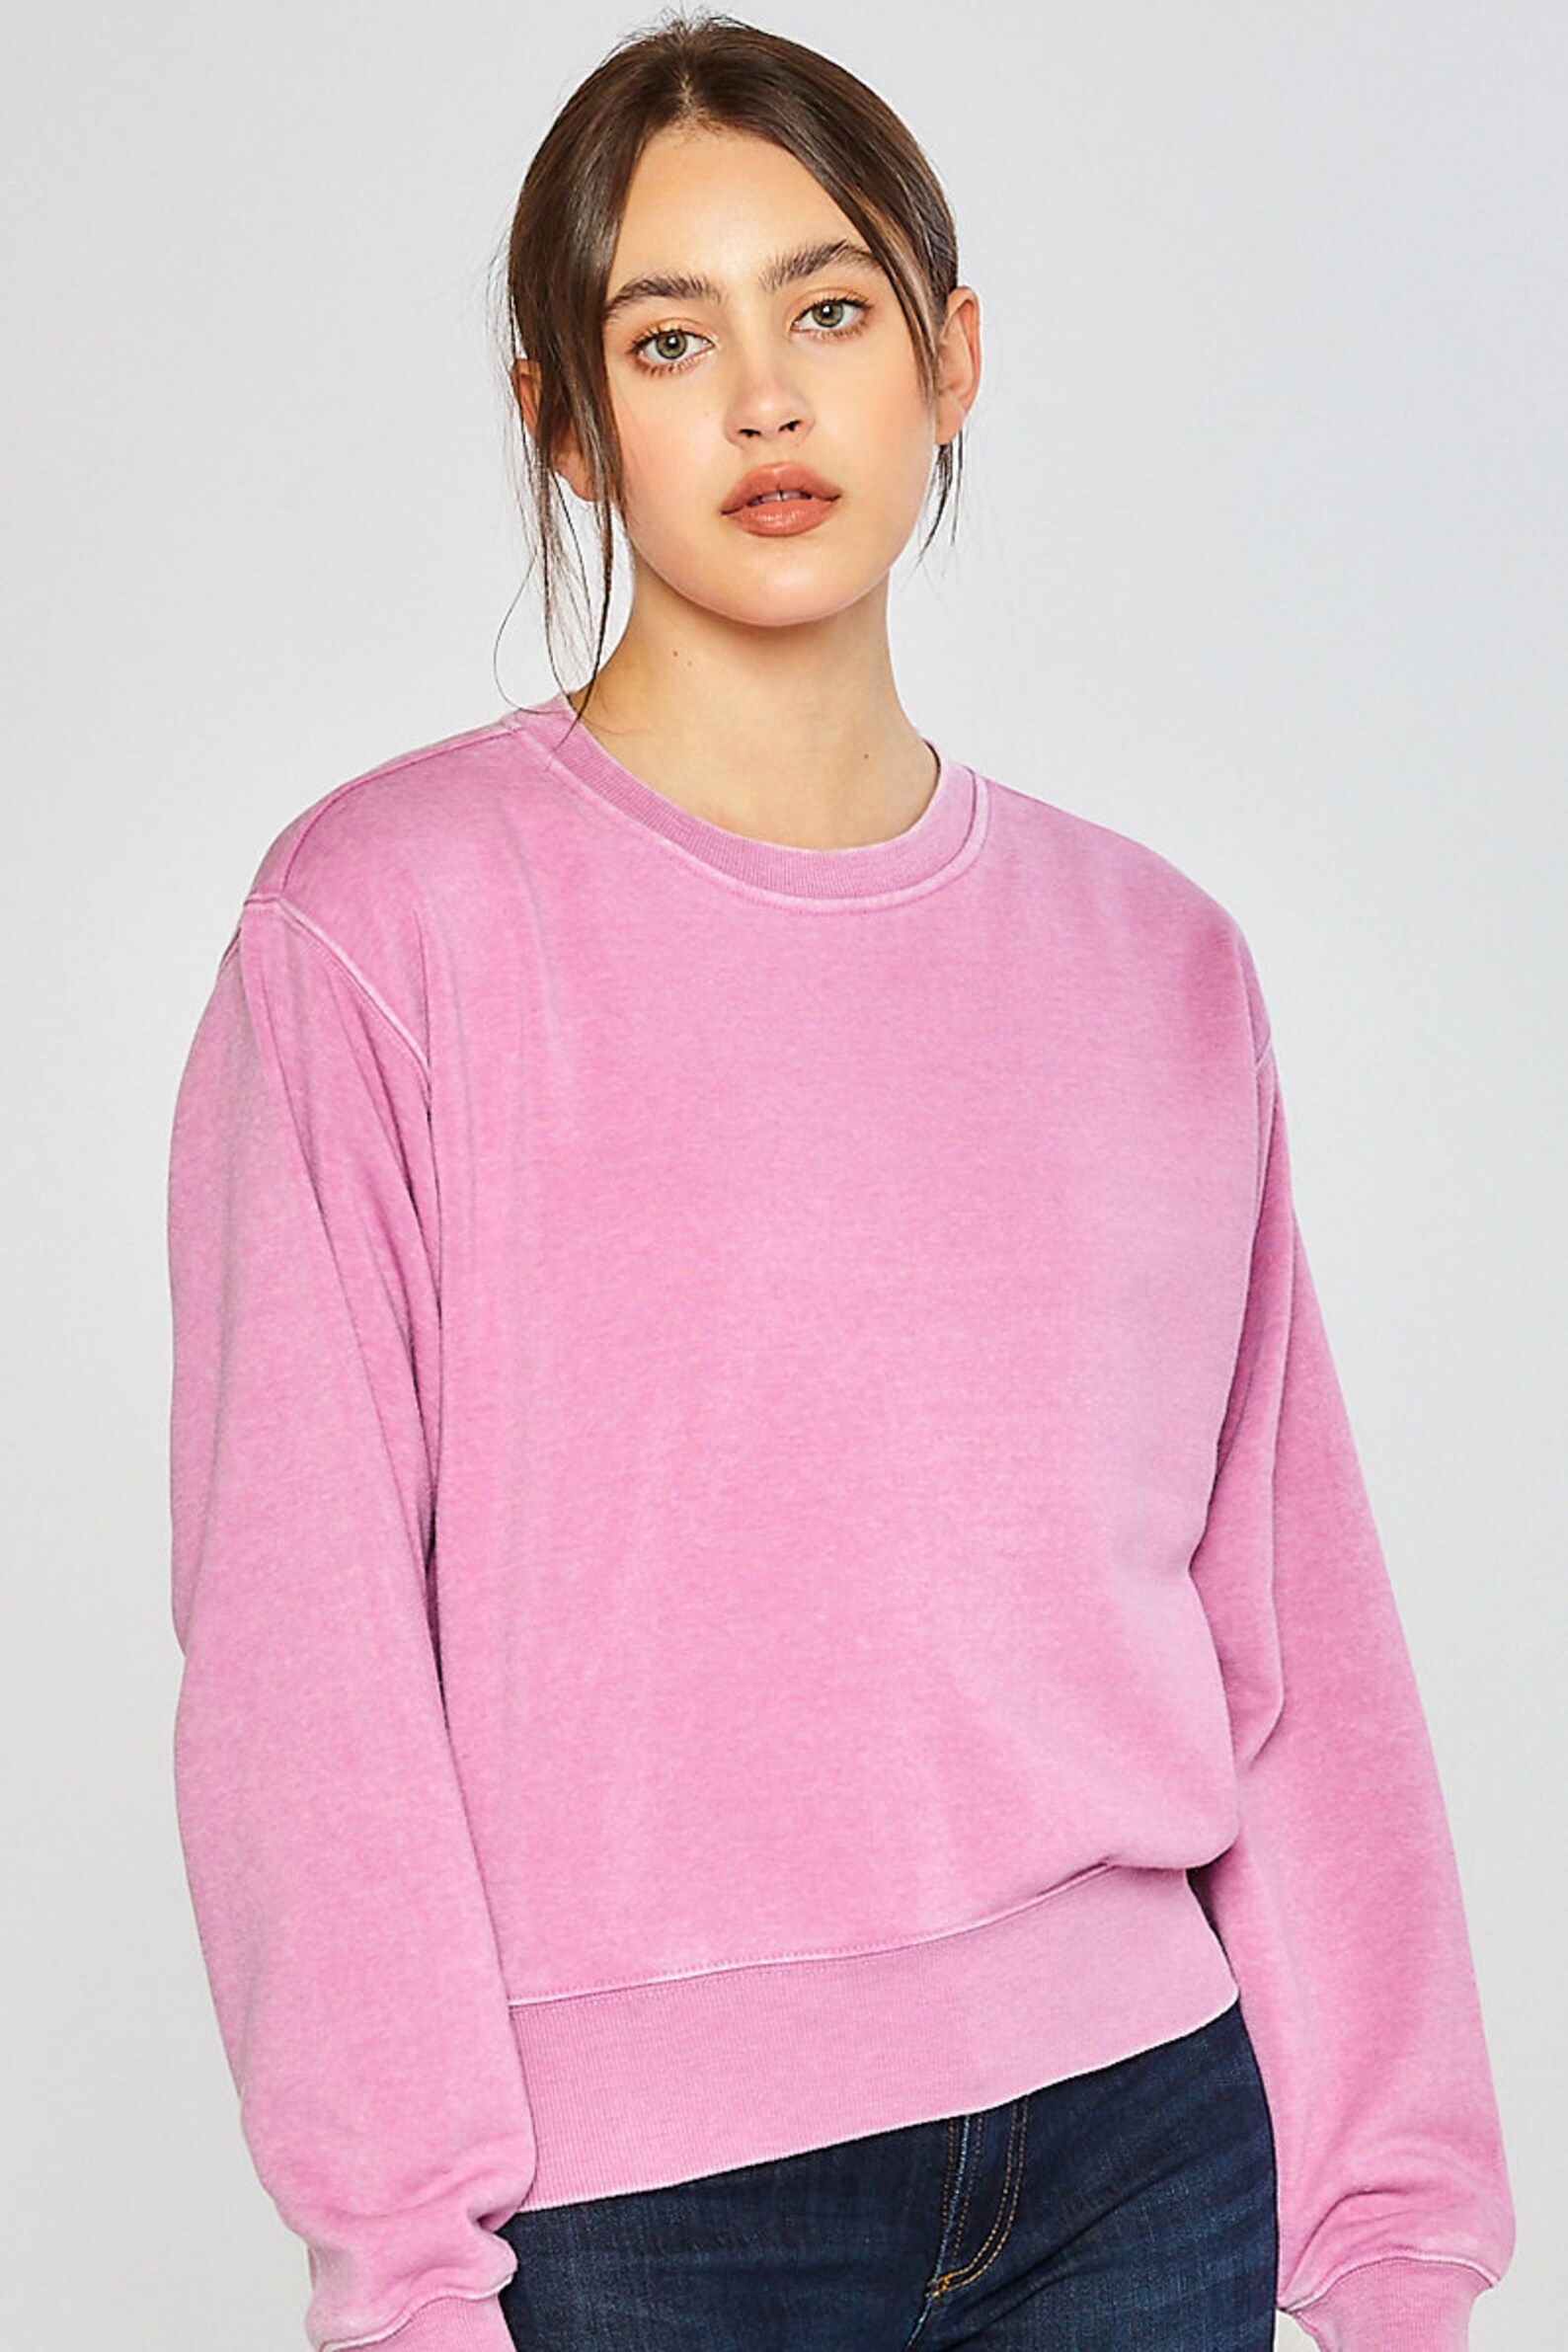 Sweatshirt Burnout Fleece Sweatshirt Soft and Comfortable | Etsy